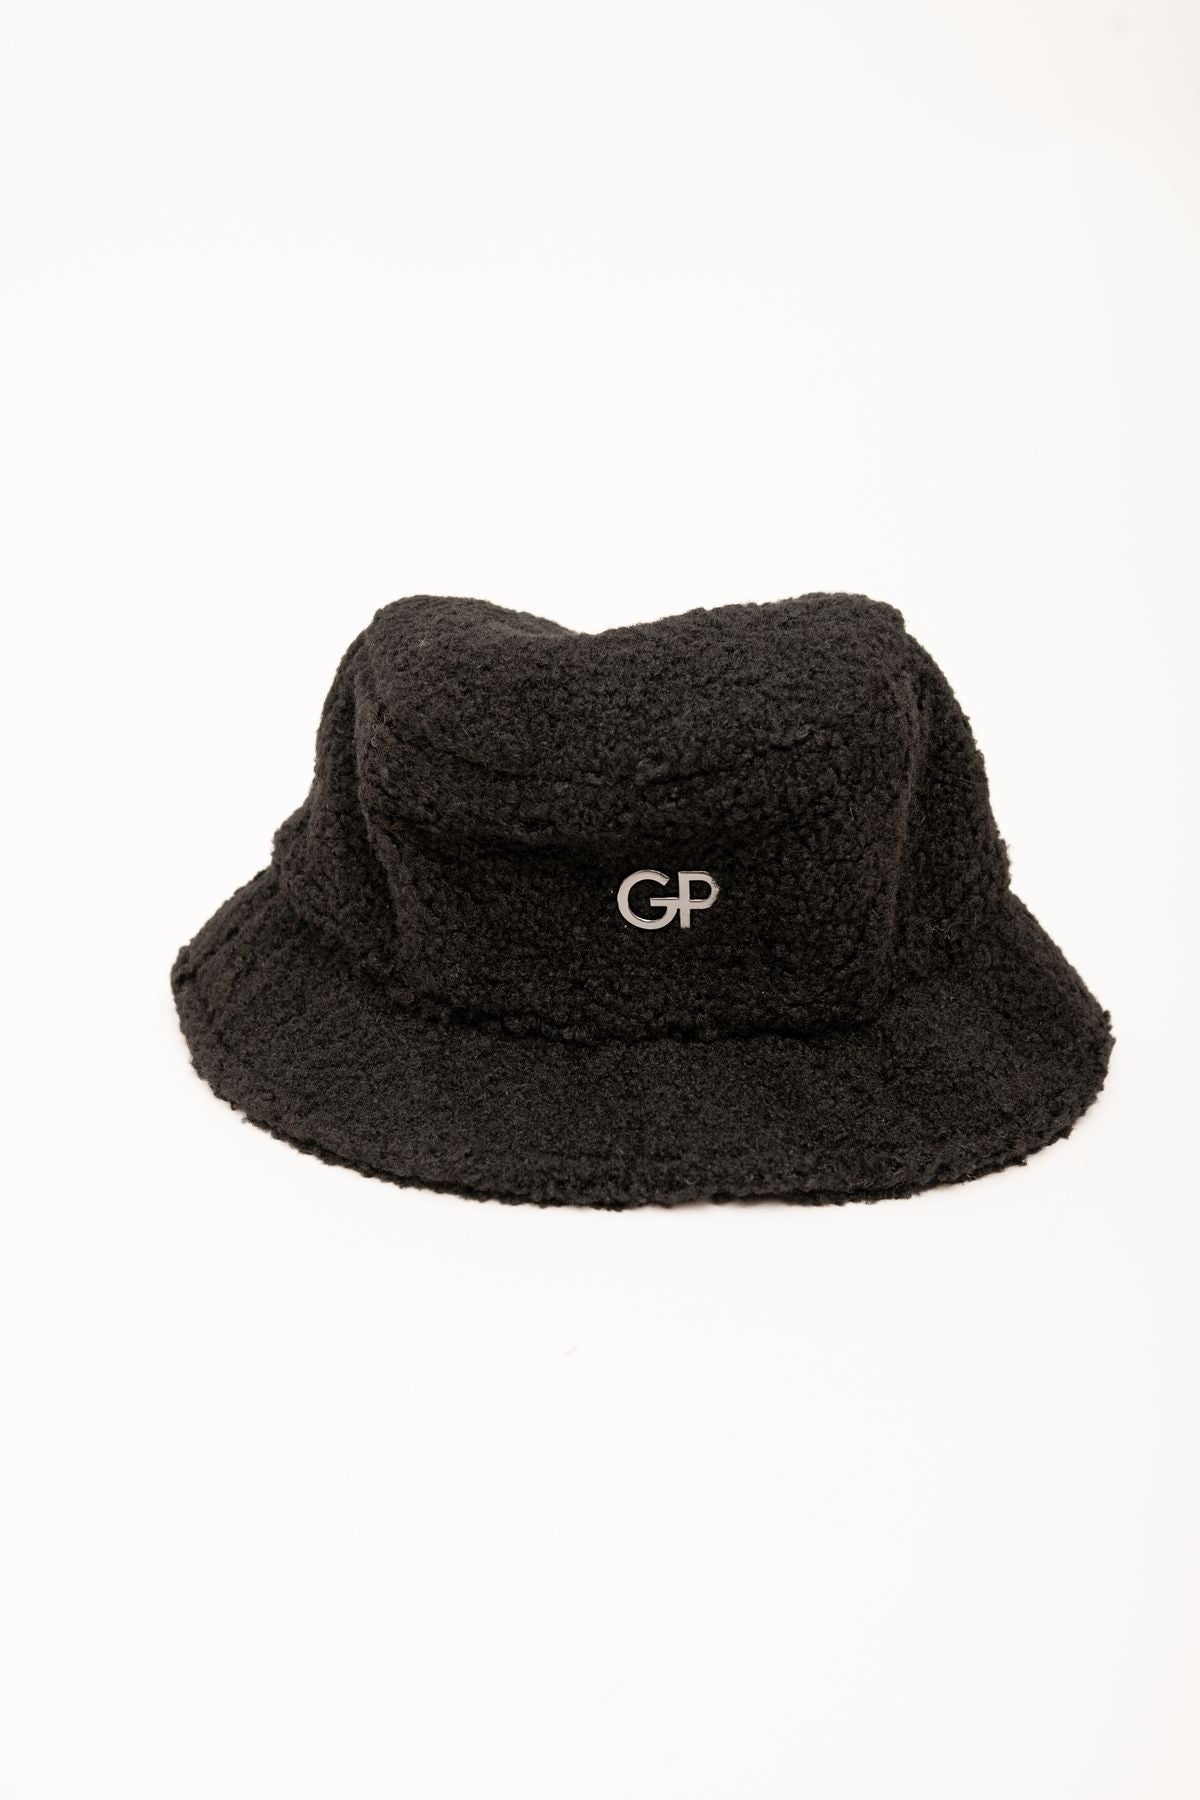 gbadp5012 - cappello - GAELLE PARIS